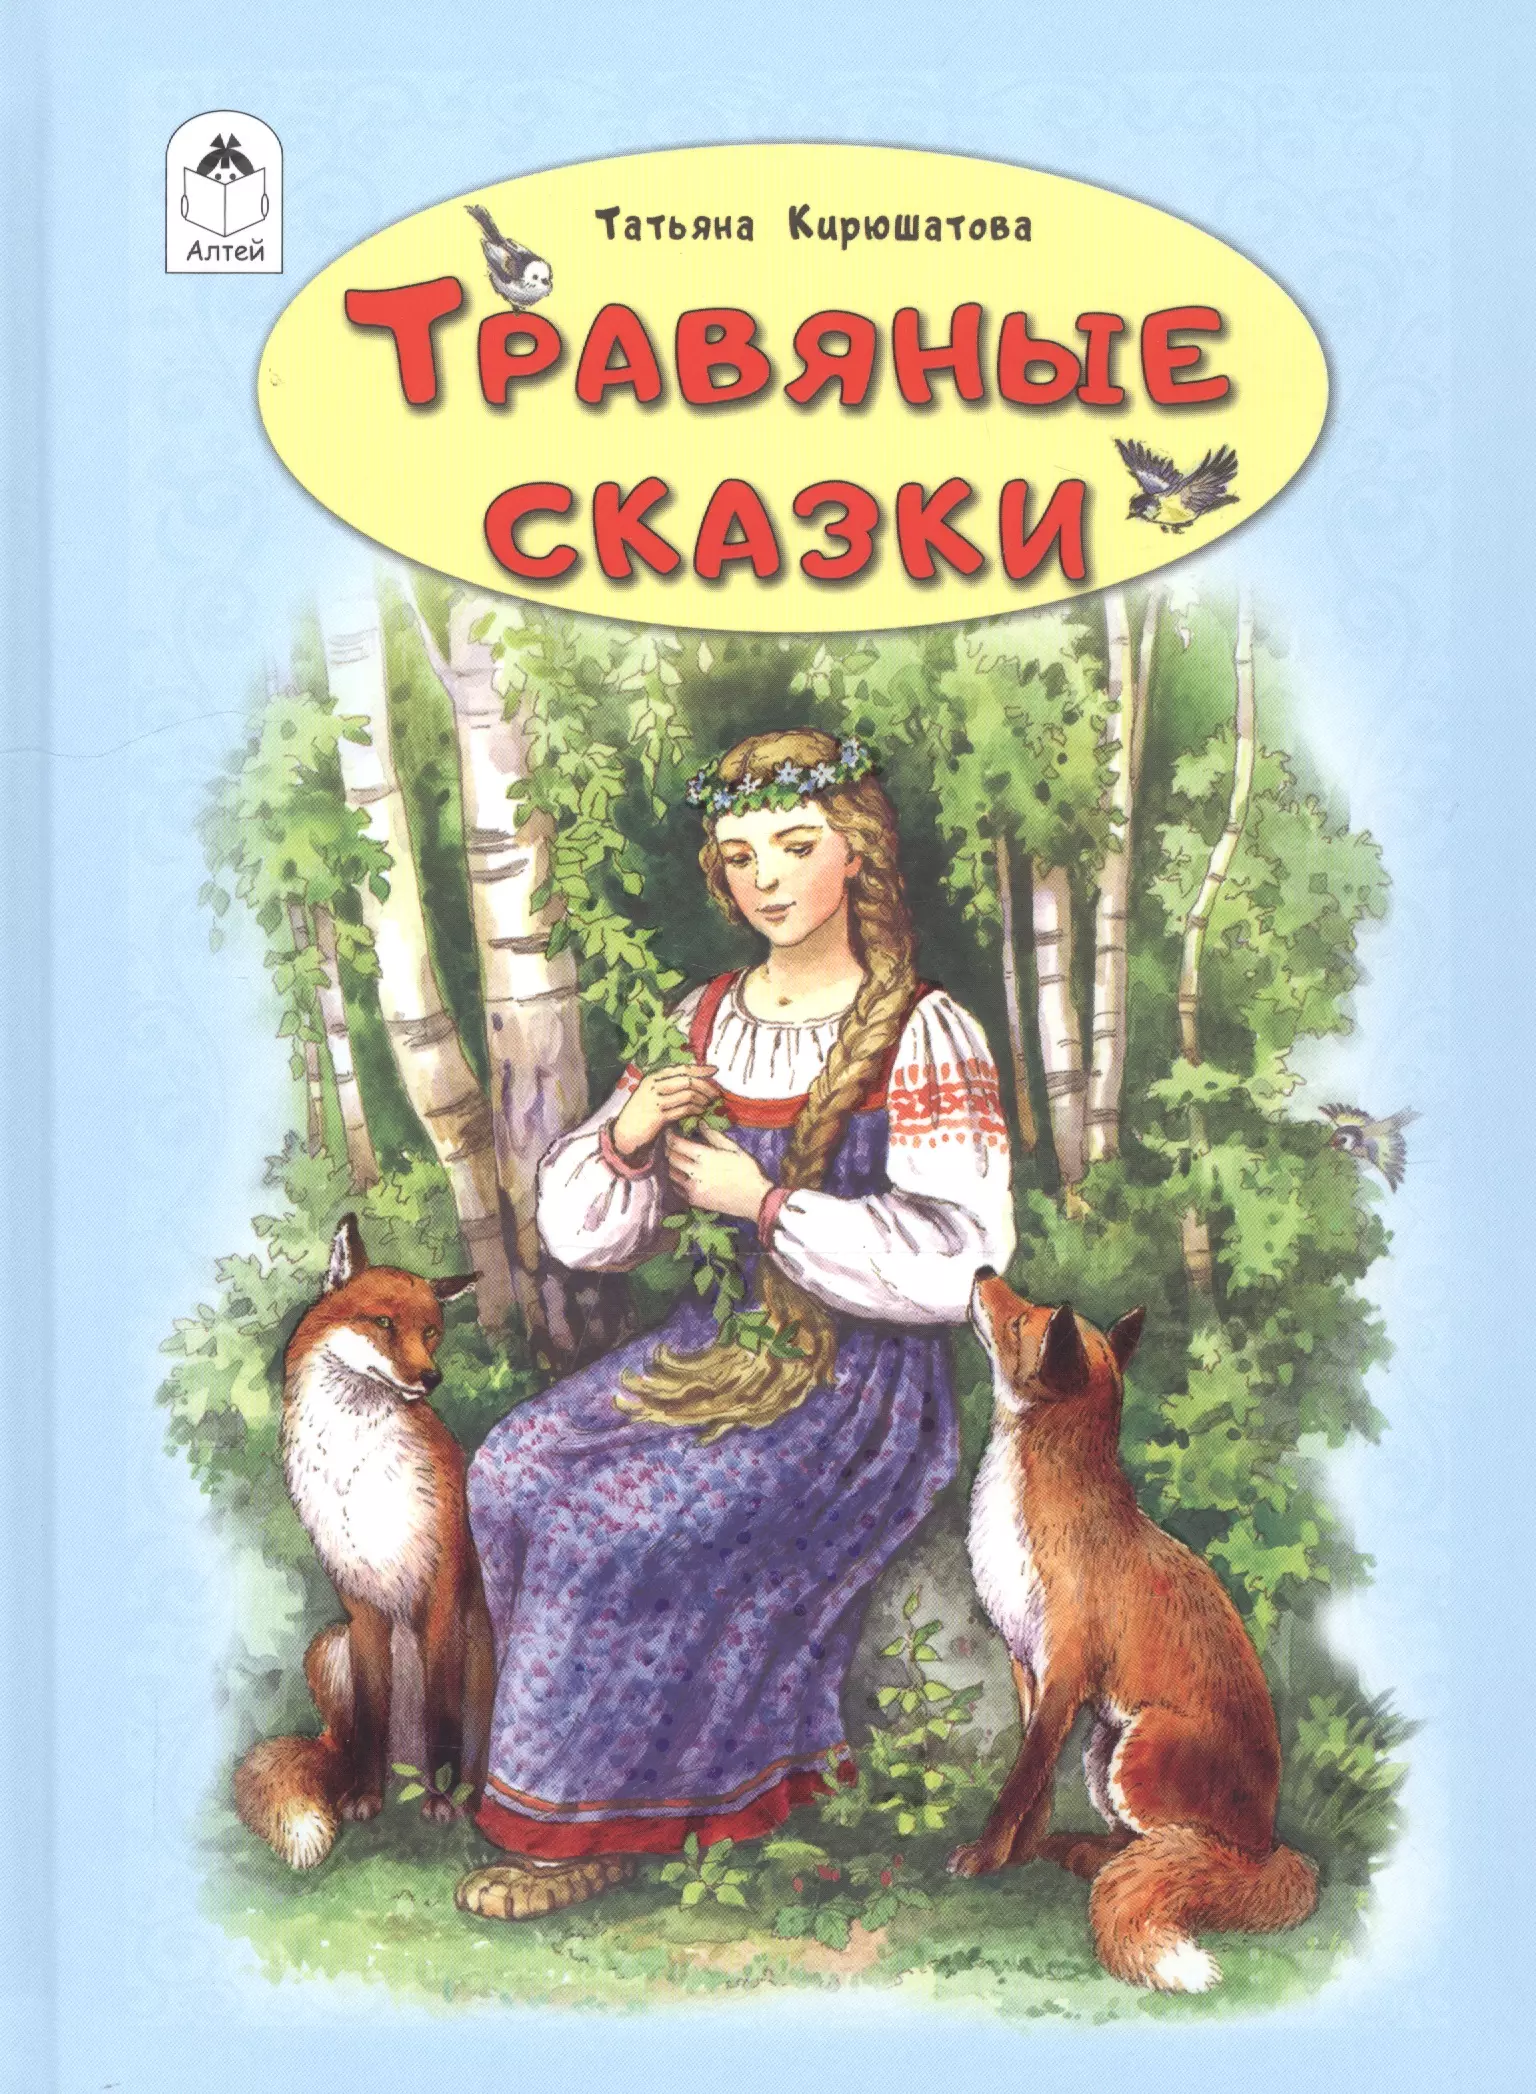 Кирюшатова Татьяна Николаевна - Травяные сказки